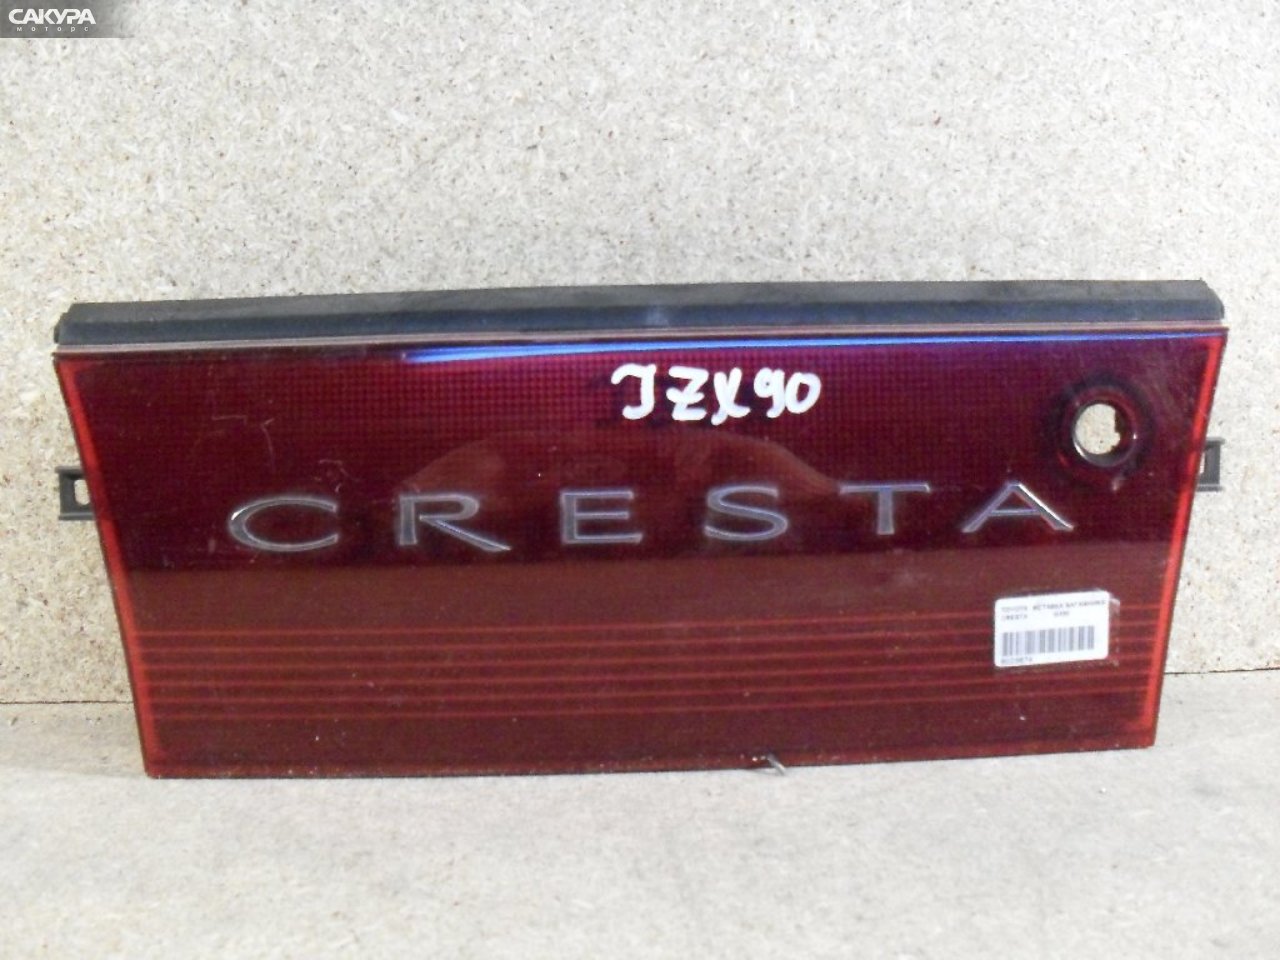 Фонарь вставка багажника Toyota Cresta GX90: купить в Сакура Абакан.